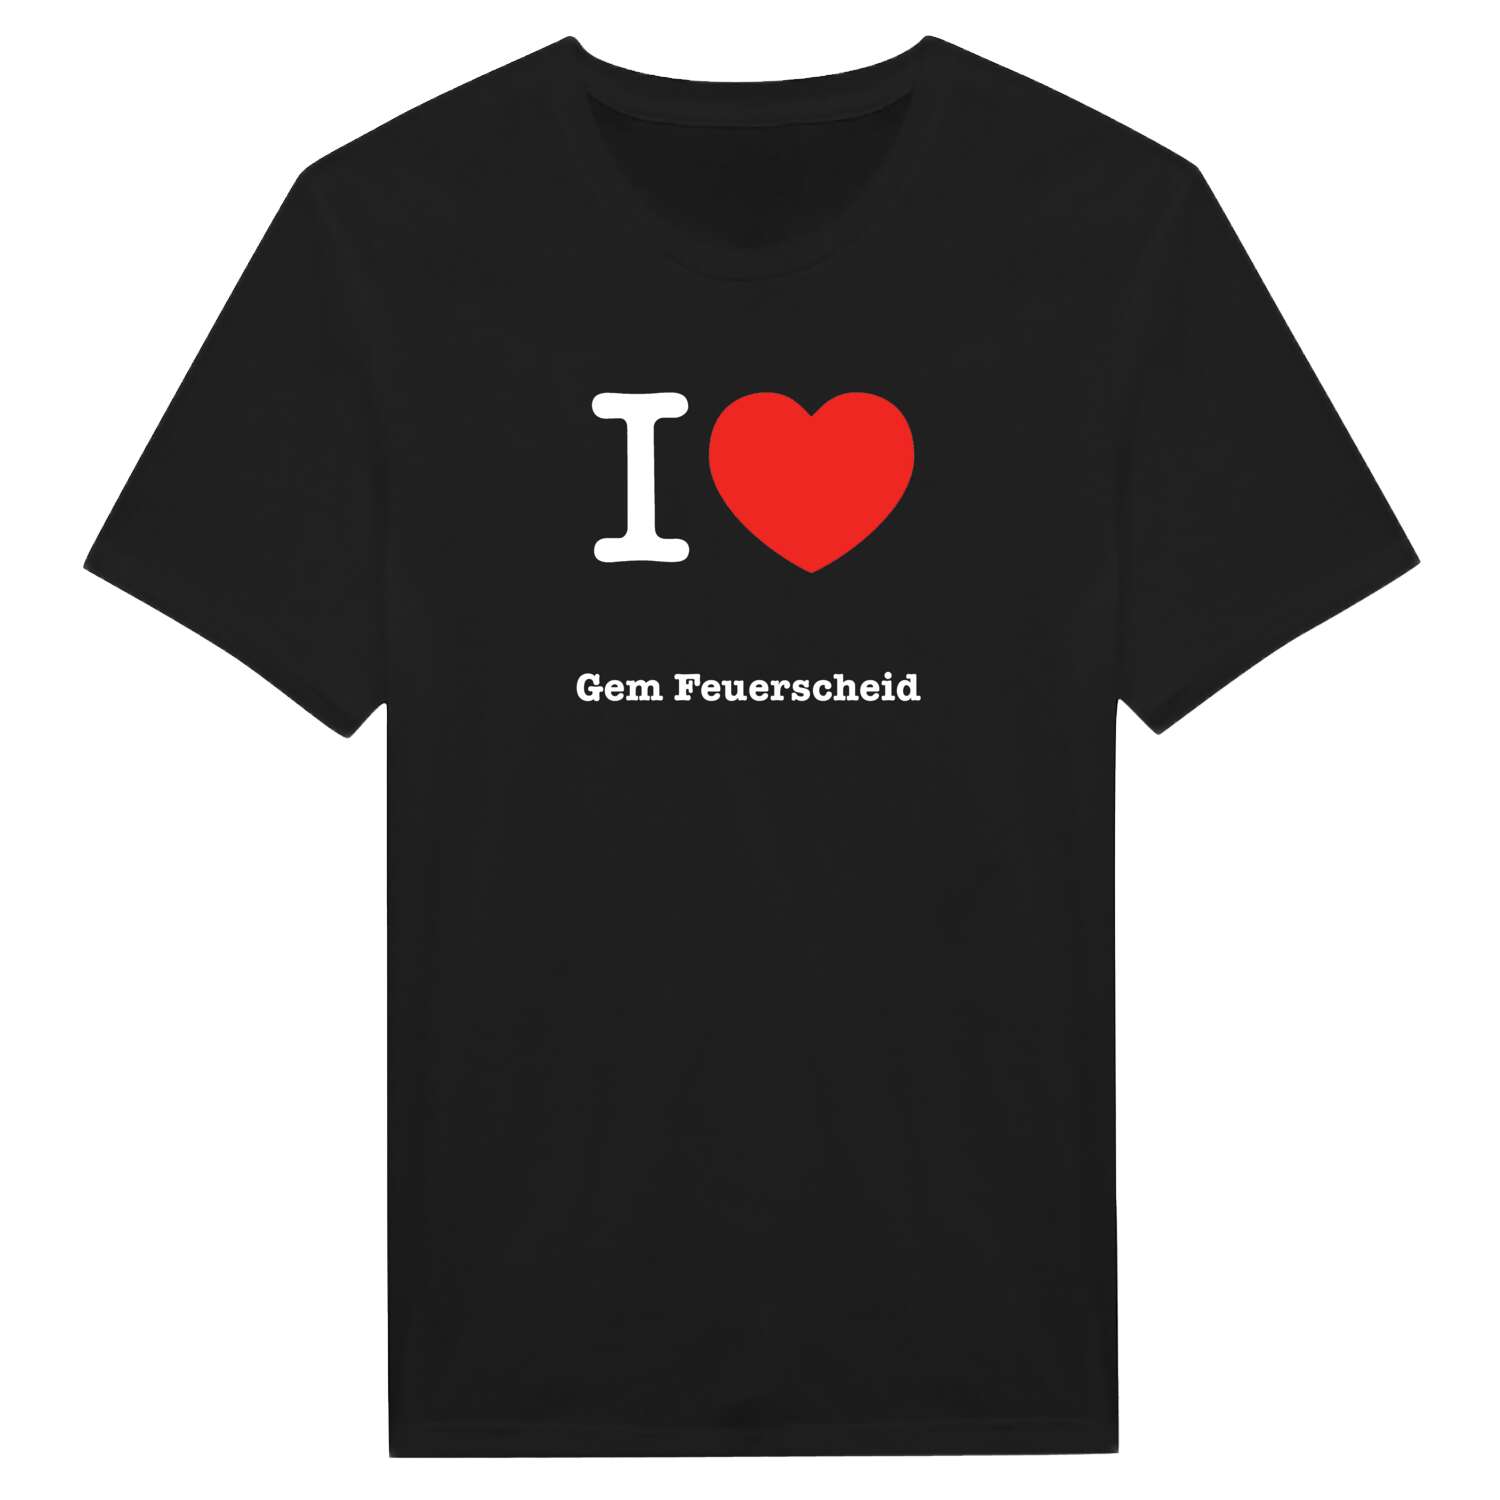 Gem Feuerscheid T-Shirt »I love«